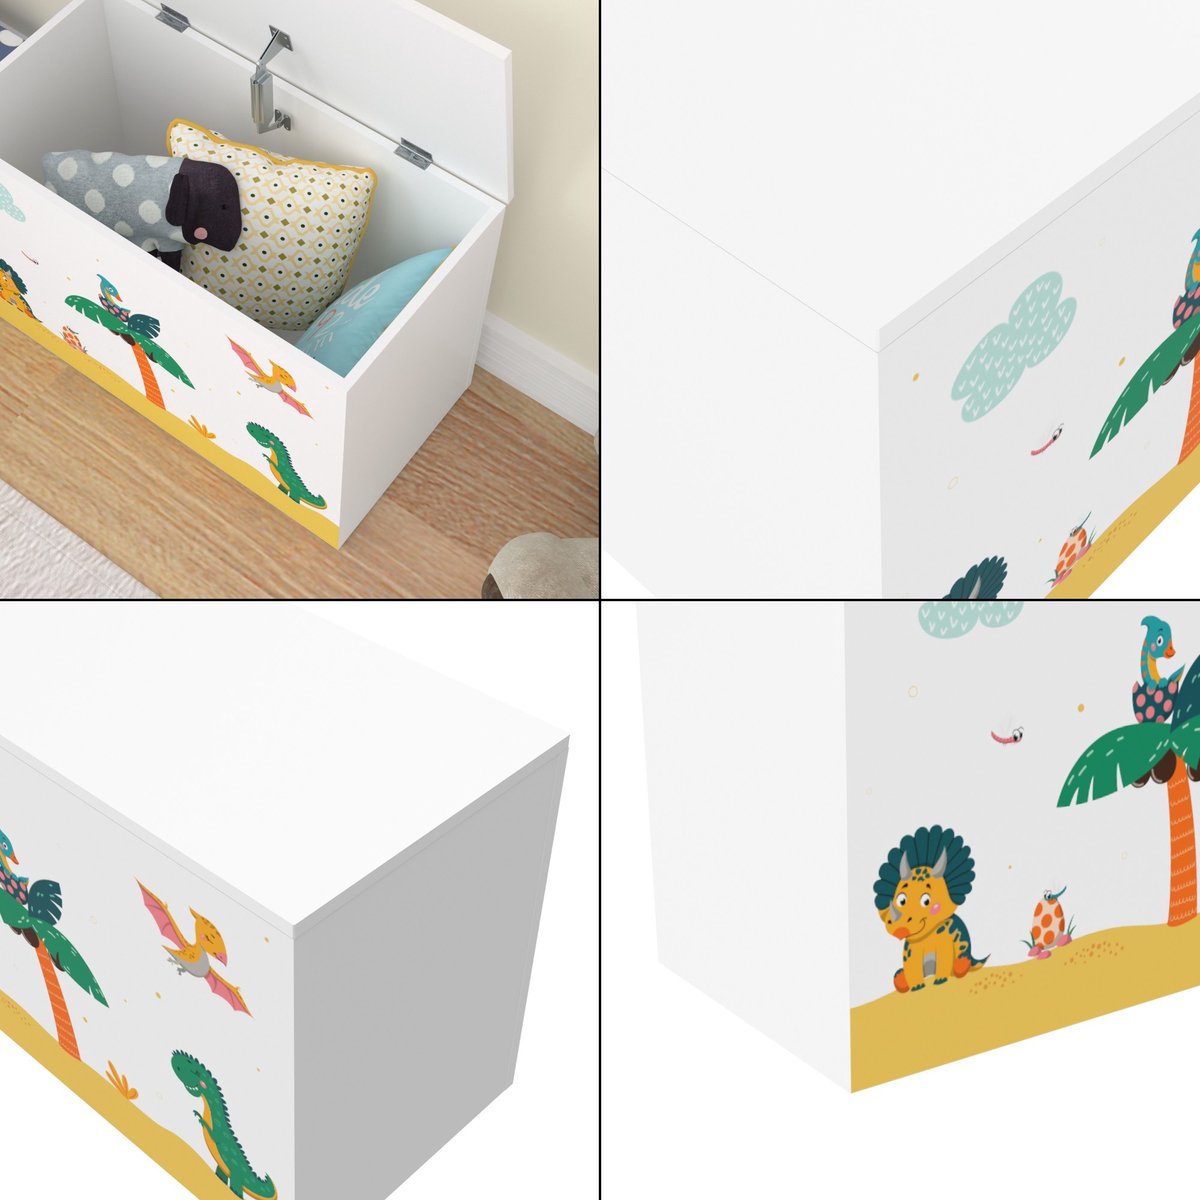 Speelgoeddoos Berniece - Doos voor speelgoed - 40x60x30 cm - dinosaurusmotief - voor jongens - voor meisjes